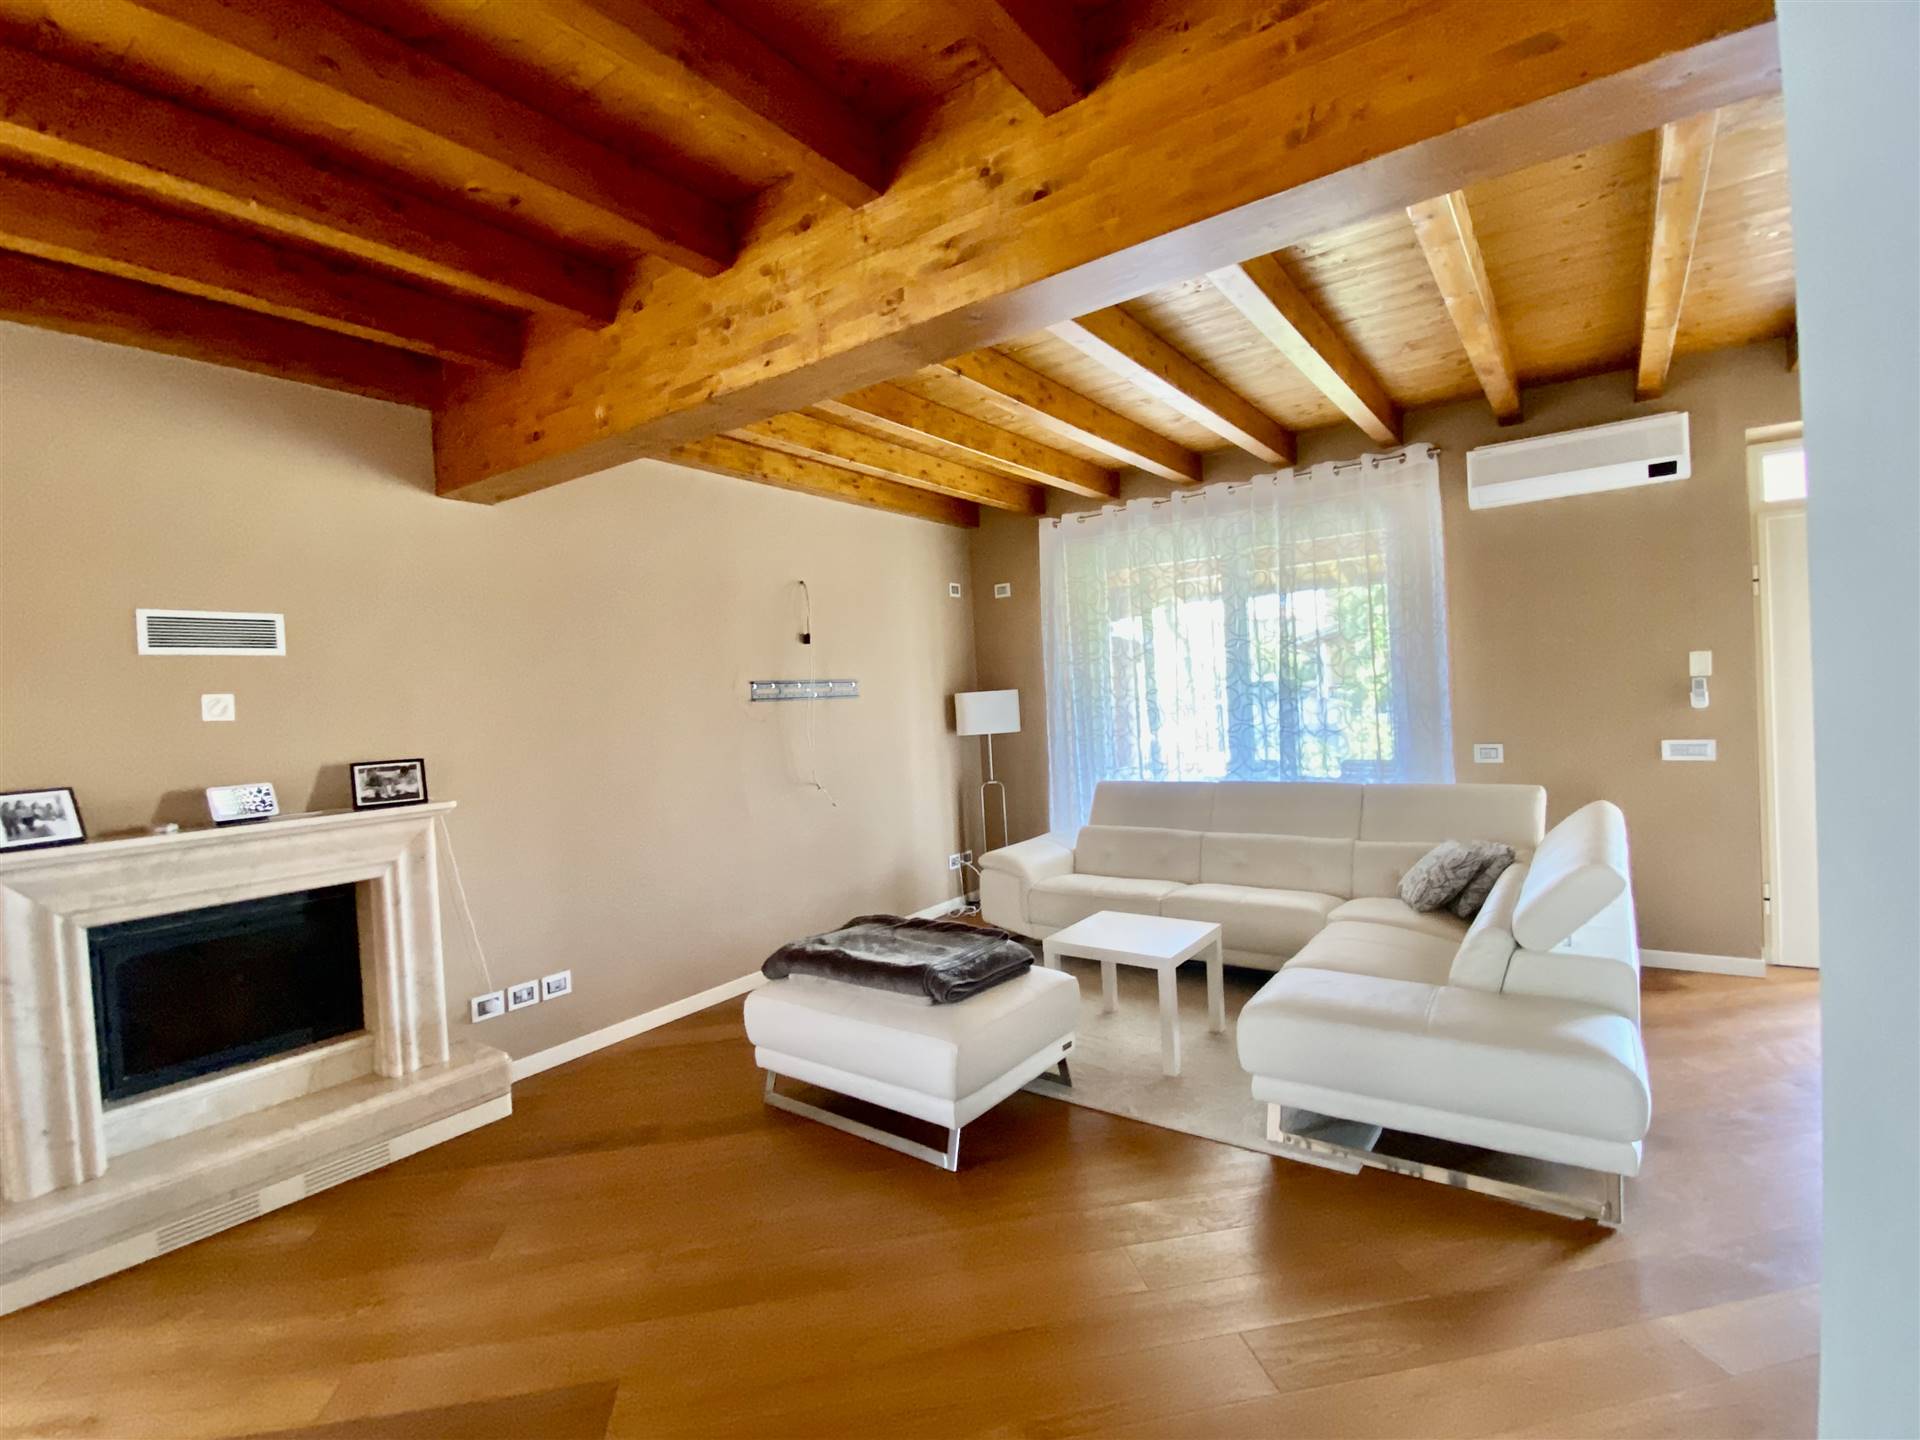 Questa elegante villa bifamiliare è ubicata in un bel quartiere residenziale di San Martino della Battaglia e adeguata per una famiglia che ama il 